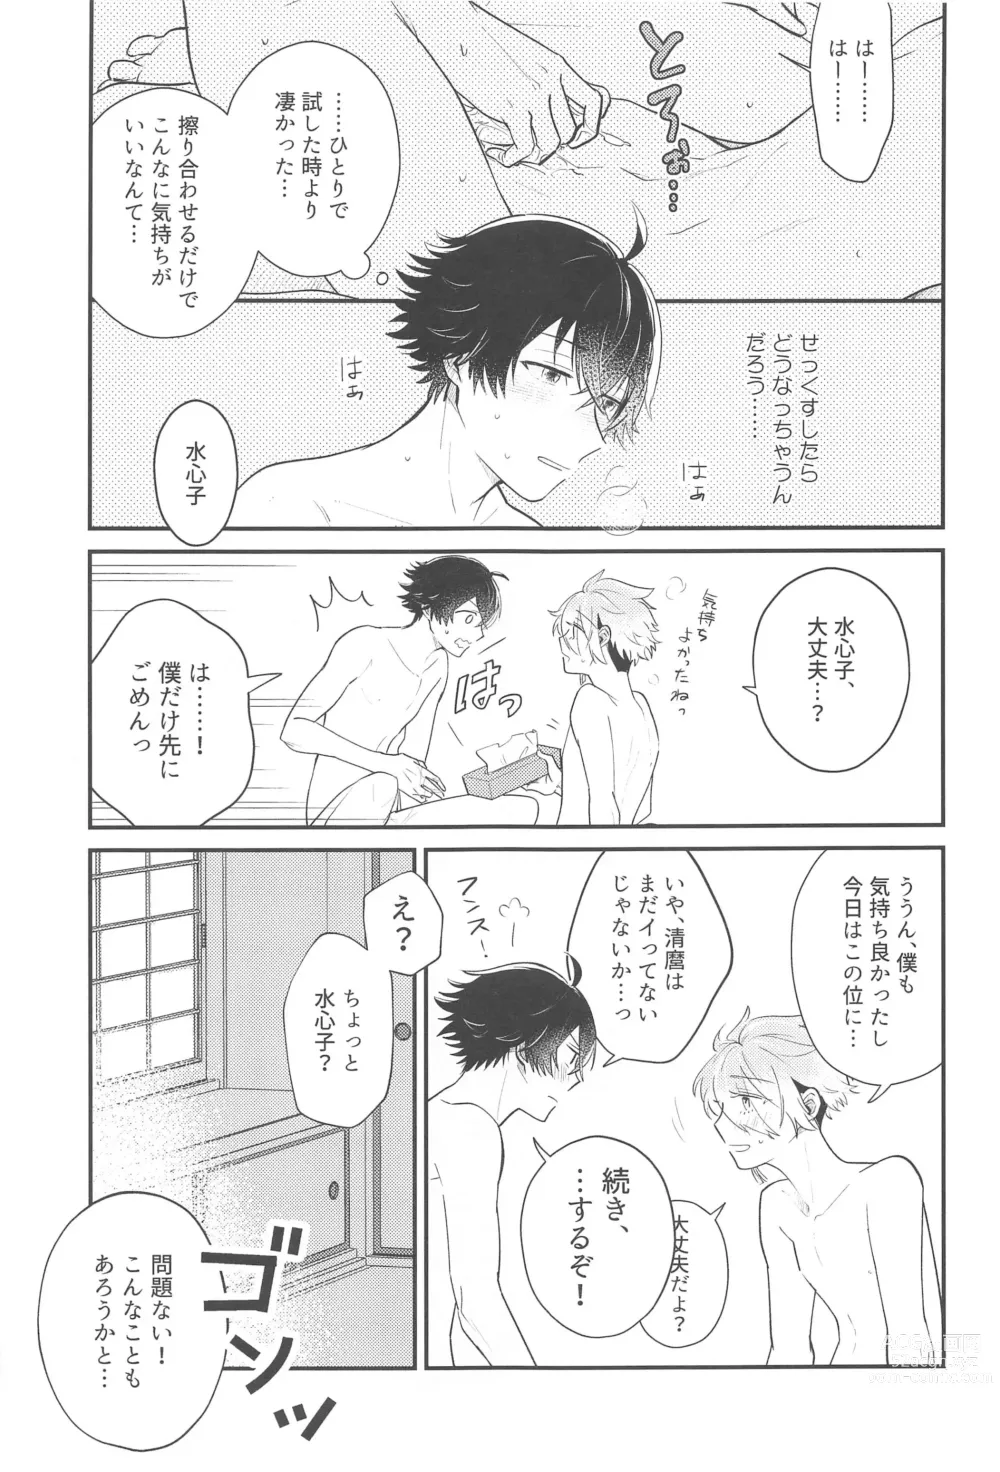 Page 12 of doujinshi Sonosaki wa Ariarito